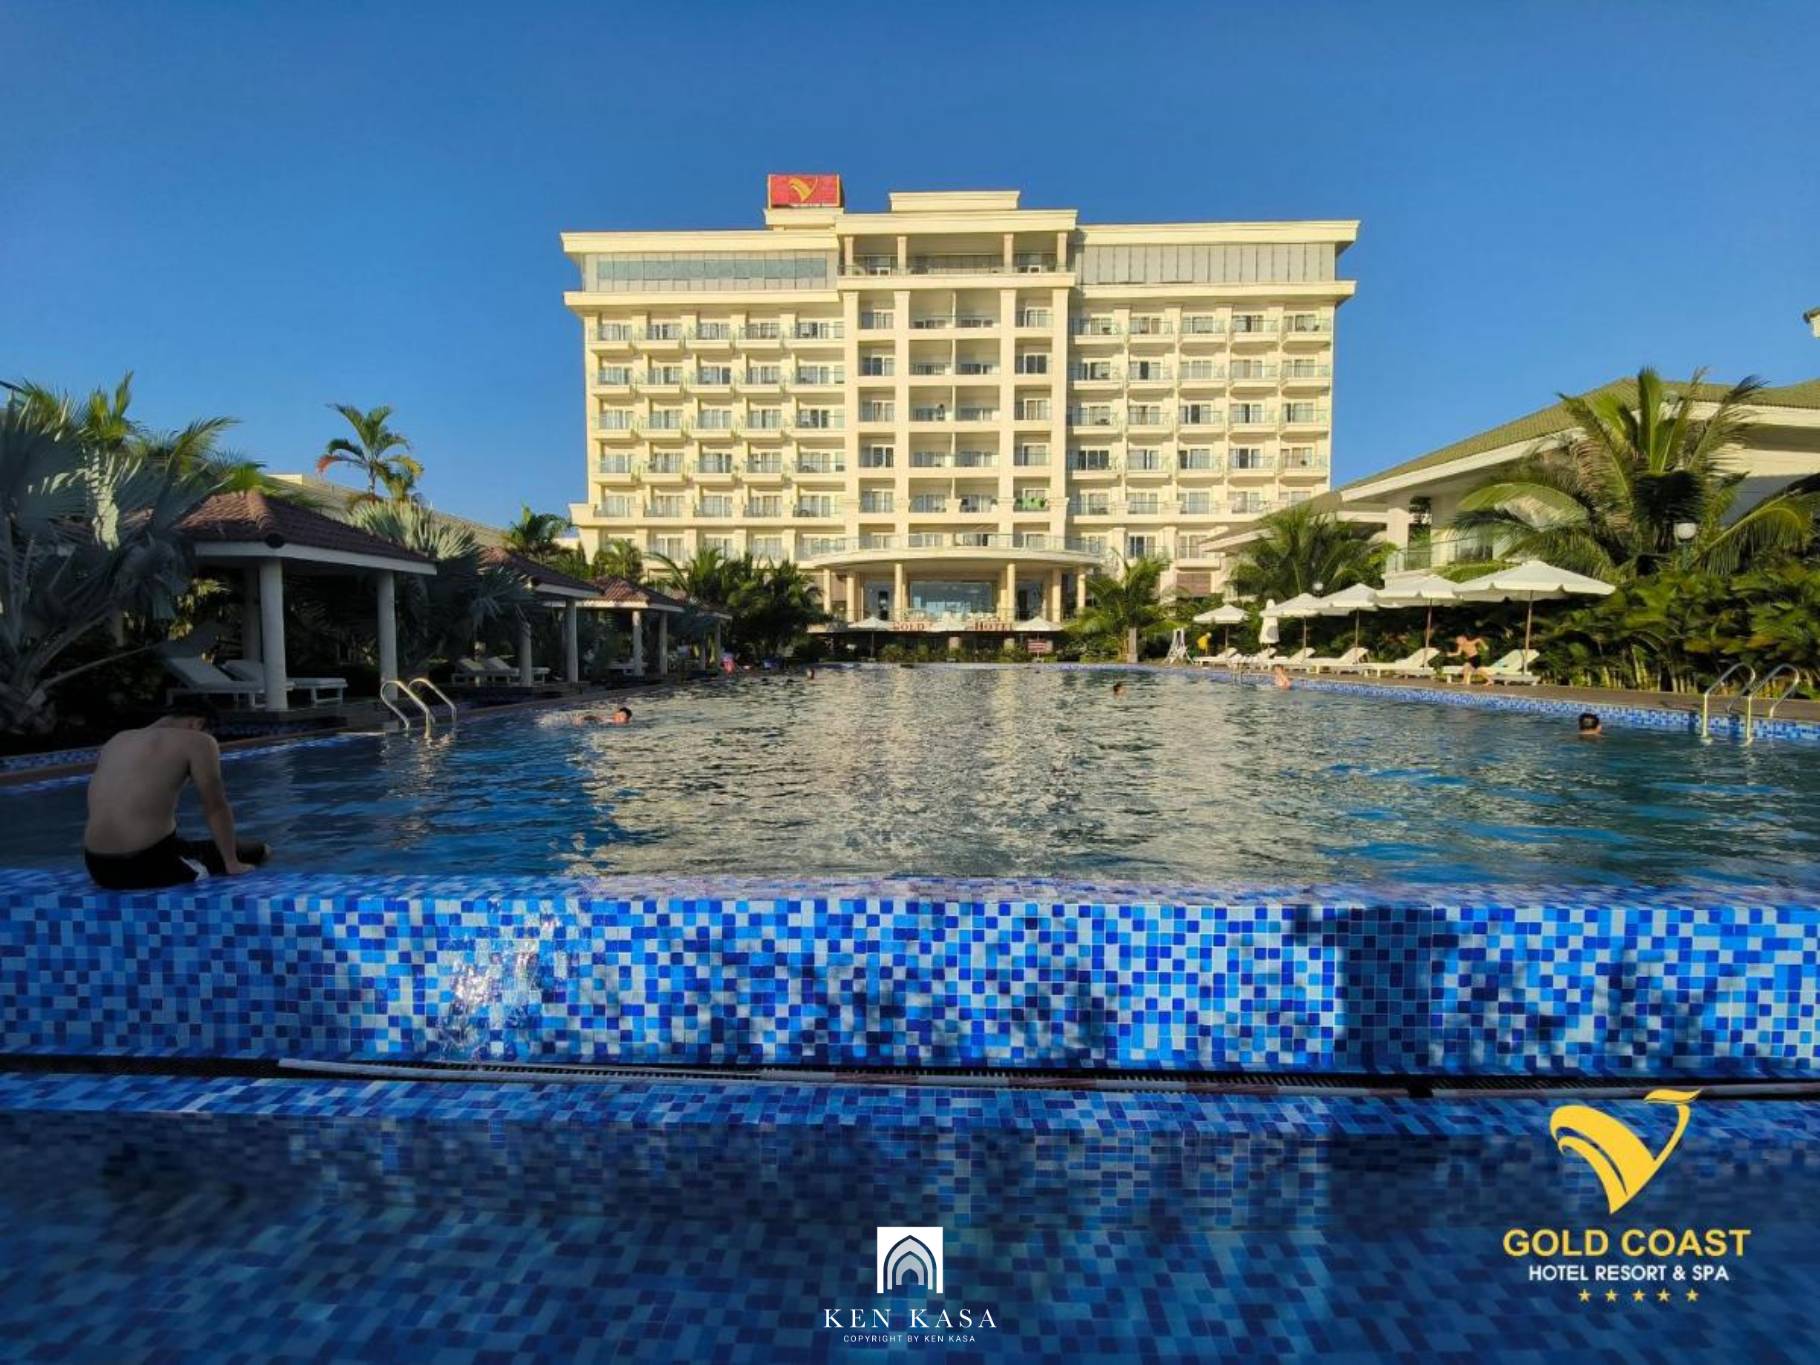 Review Gold Coast Hotel Resort & Spa - Vẻ đẹp hiện đại bên bờ biển Quảng Bình